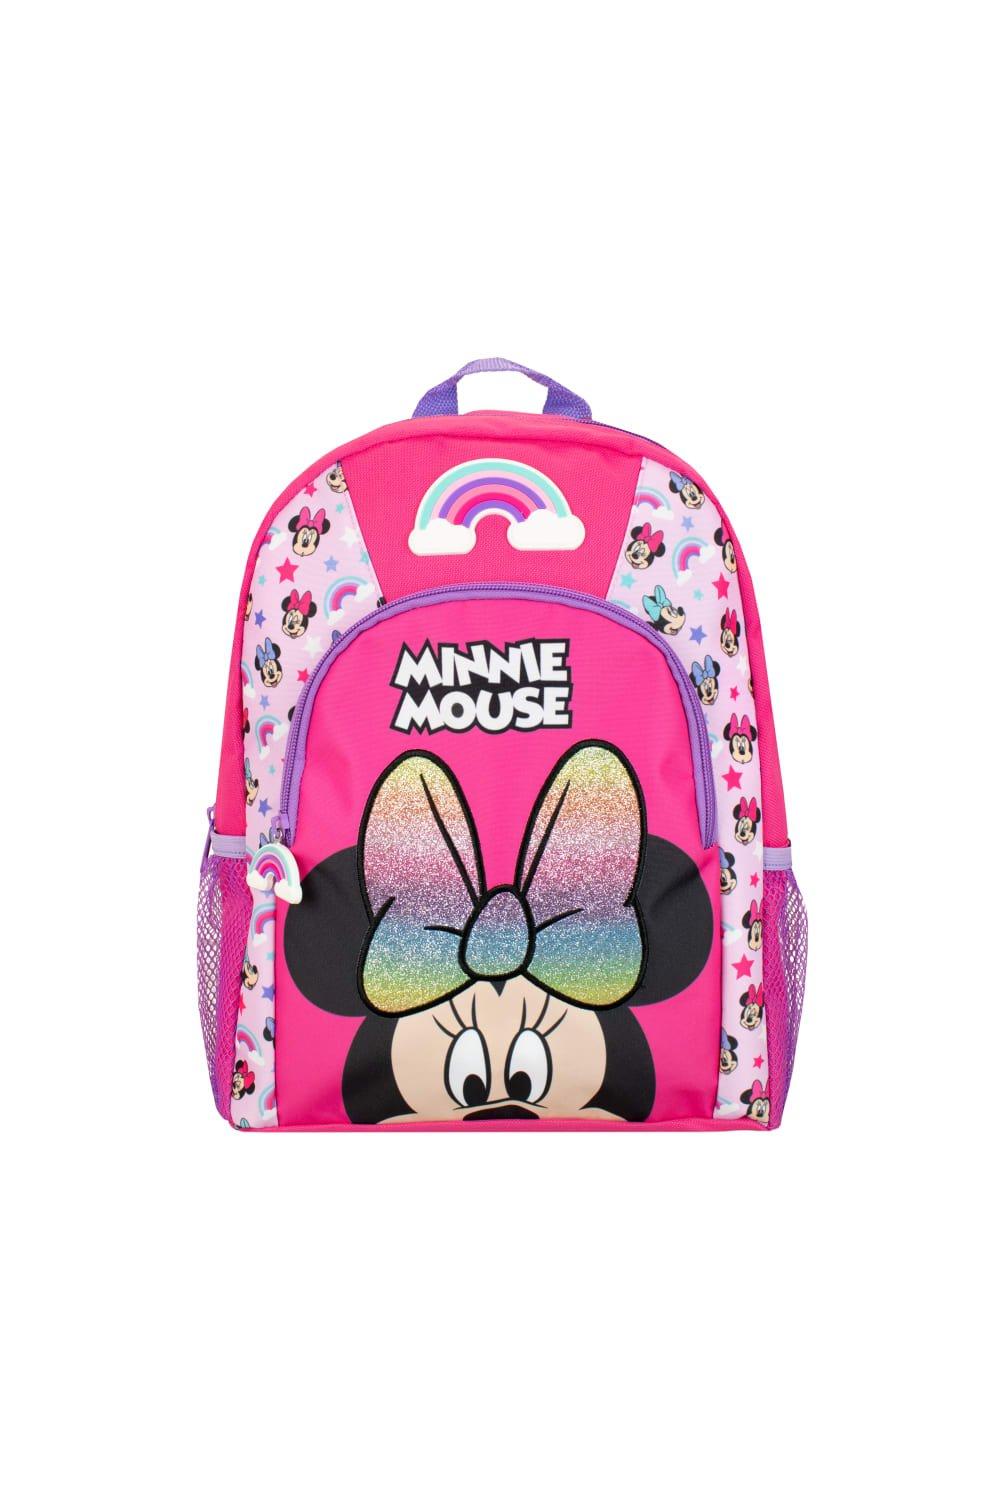 Детский рюкзак с Минни Маус Disney, розовый детский рюкзак минни маус с 3d бантиком disney красный